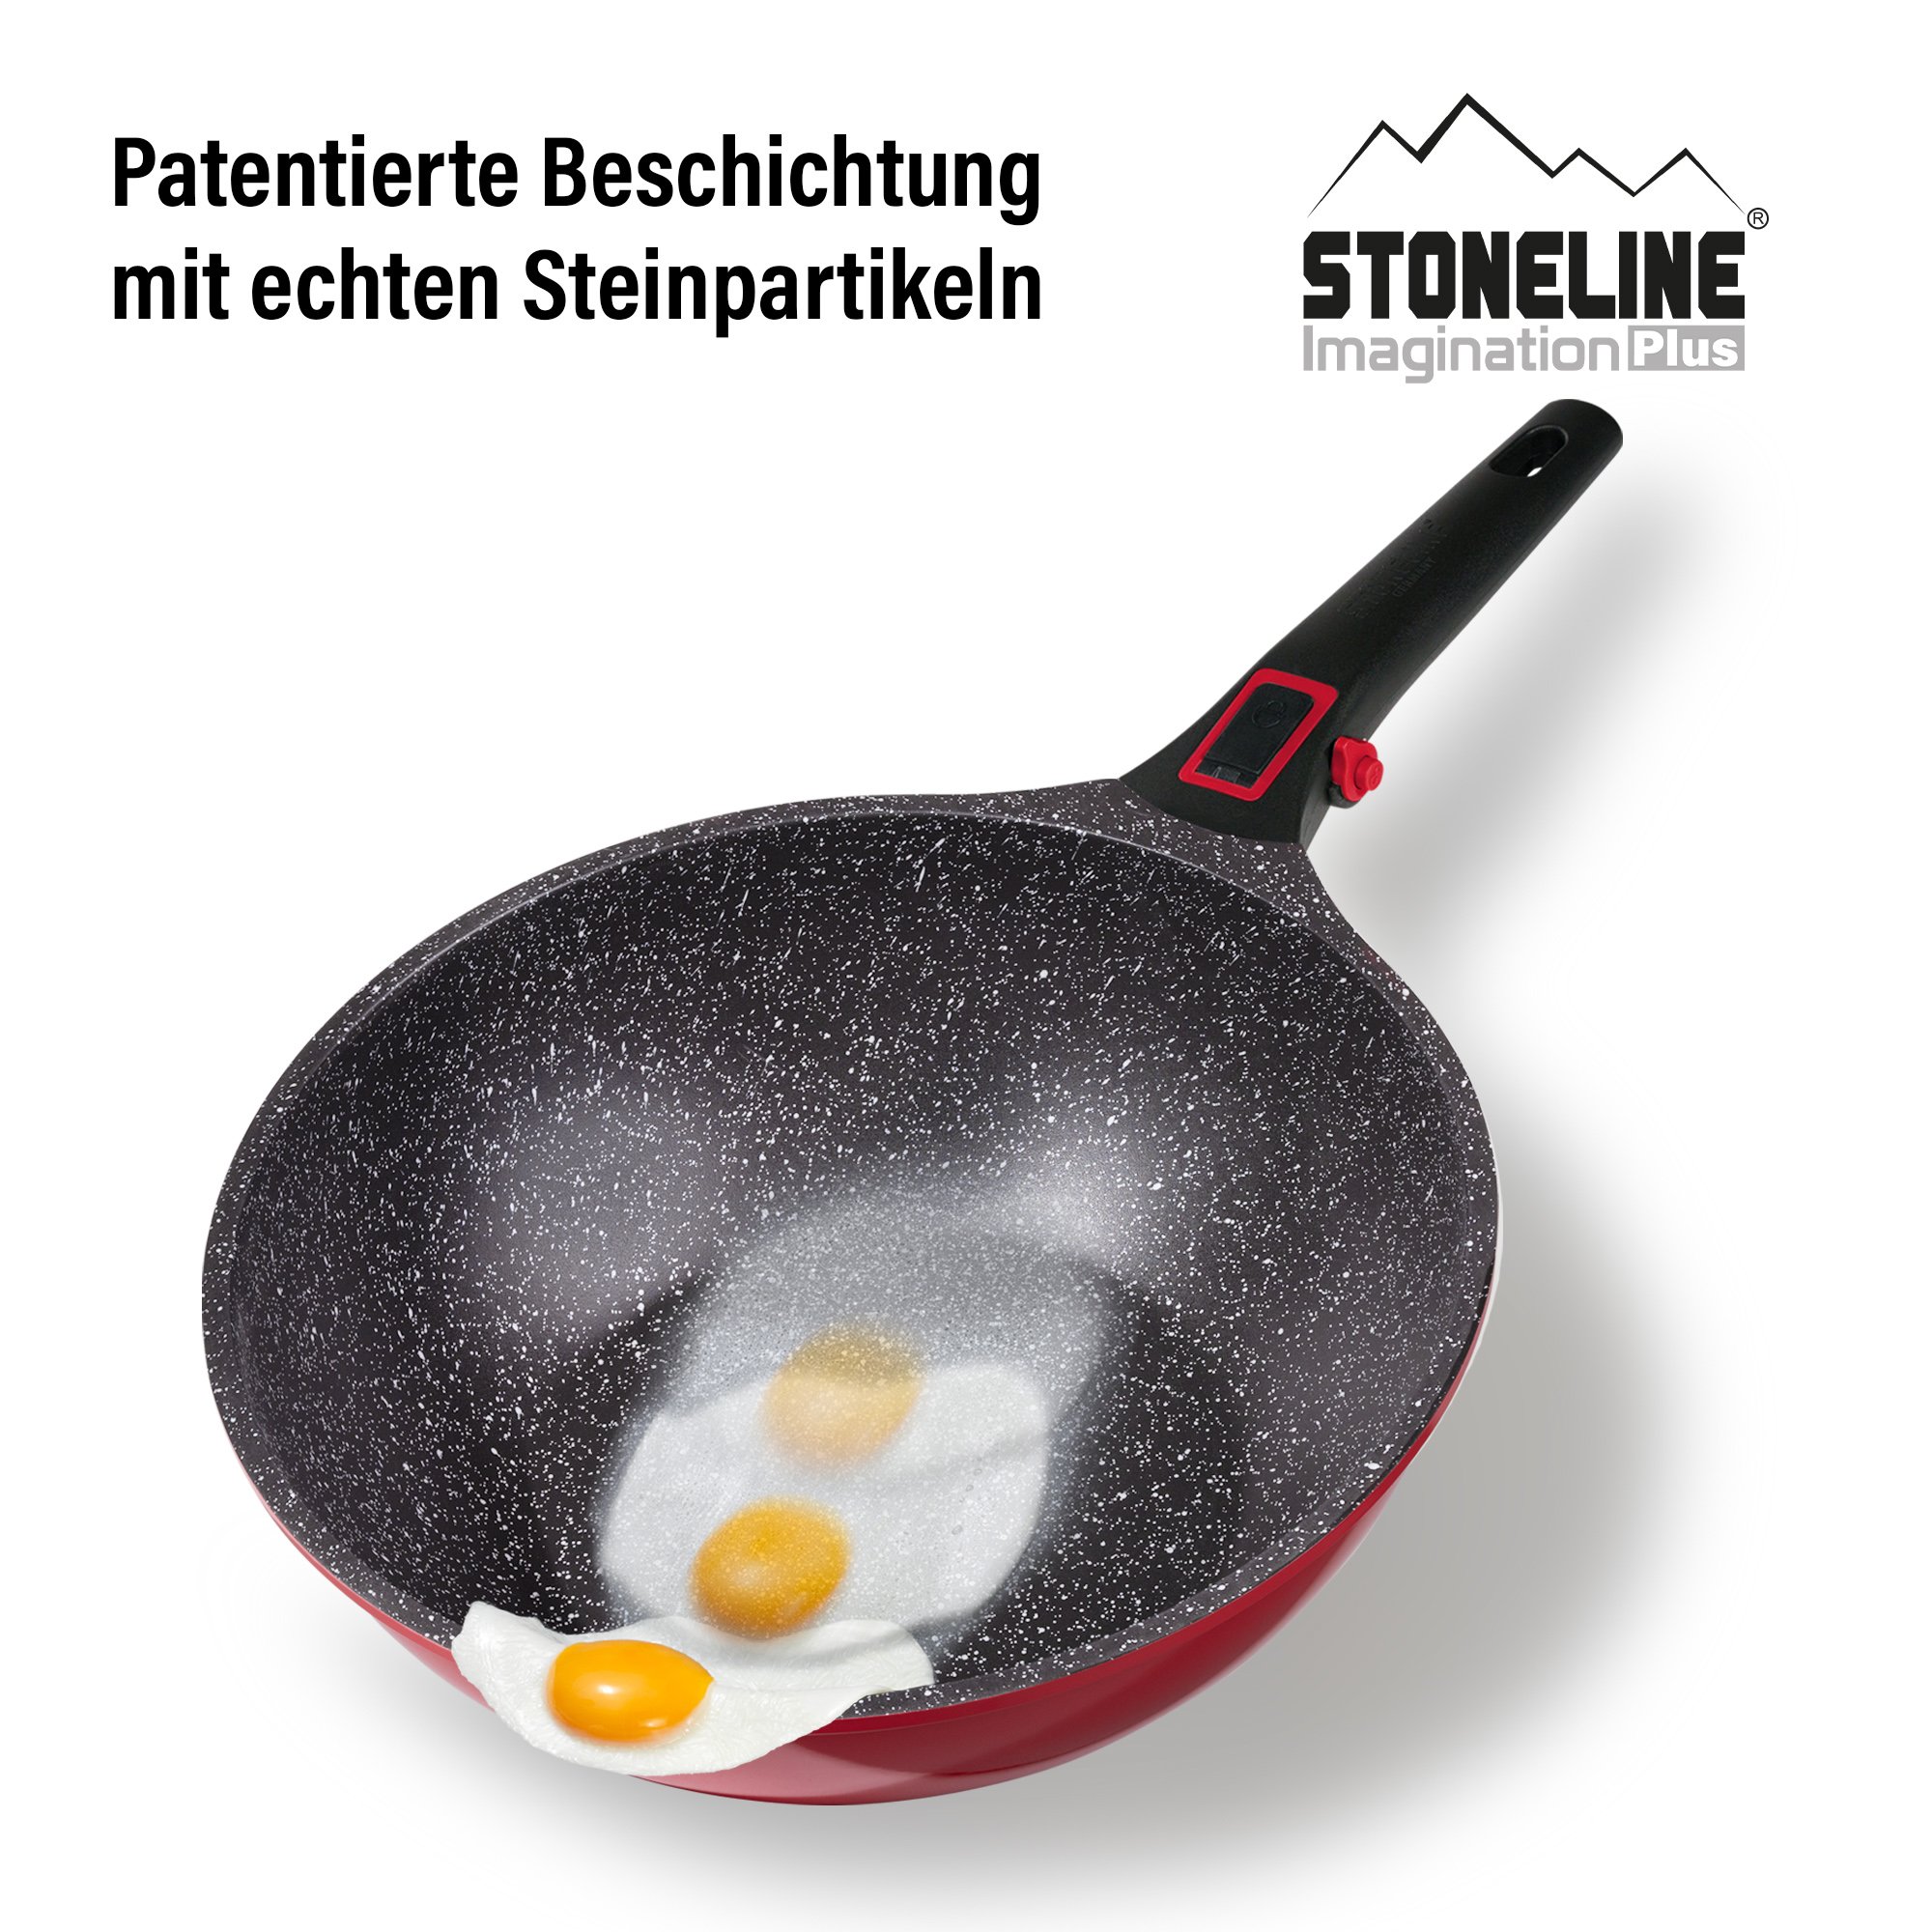 STONELINE® Imagination PLUS Wok Pan 30 cm, Removable Handle, with Lid, Non-Stick Pan 